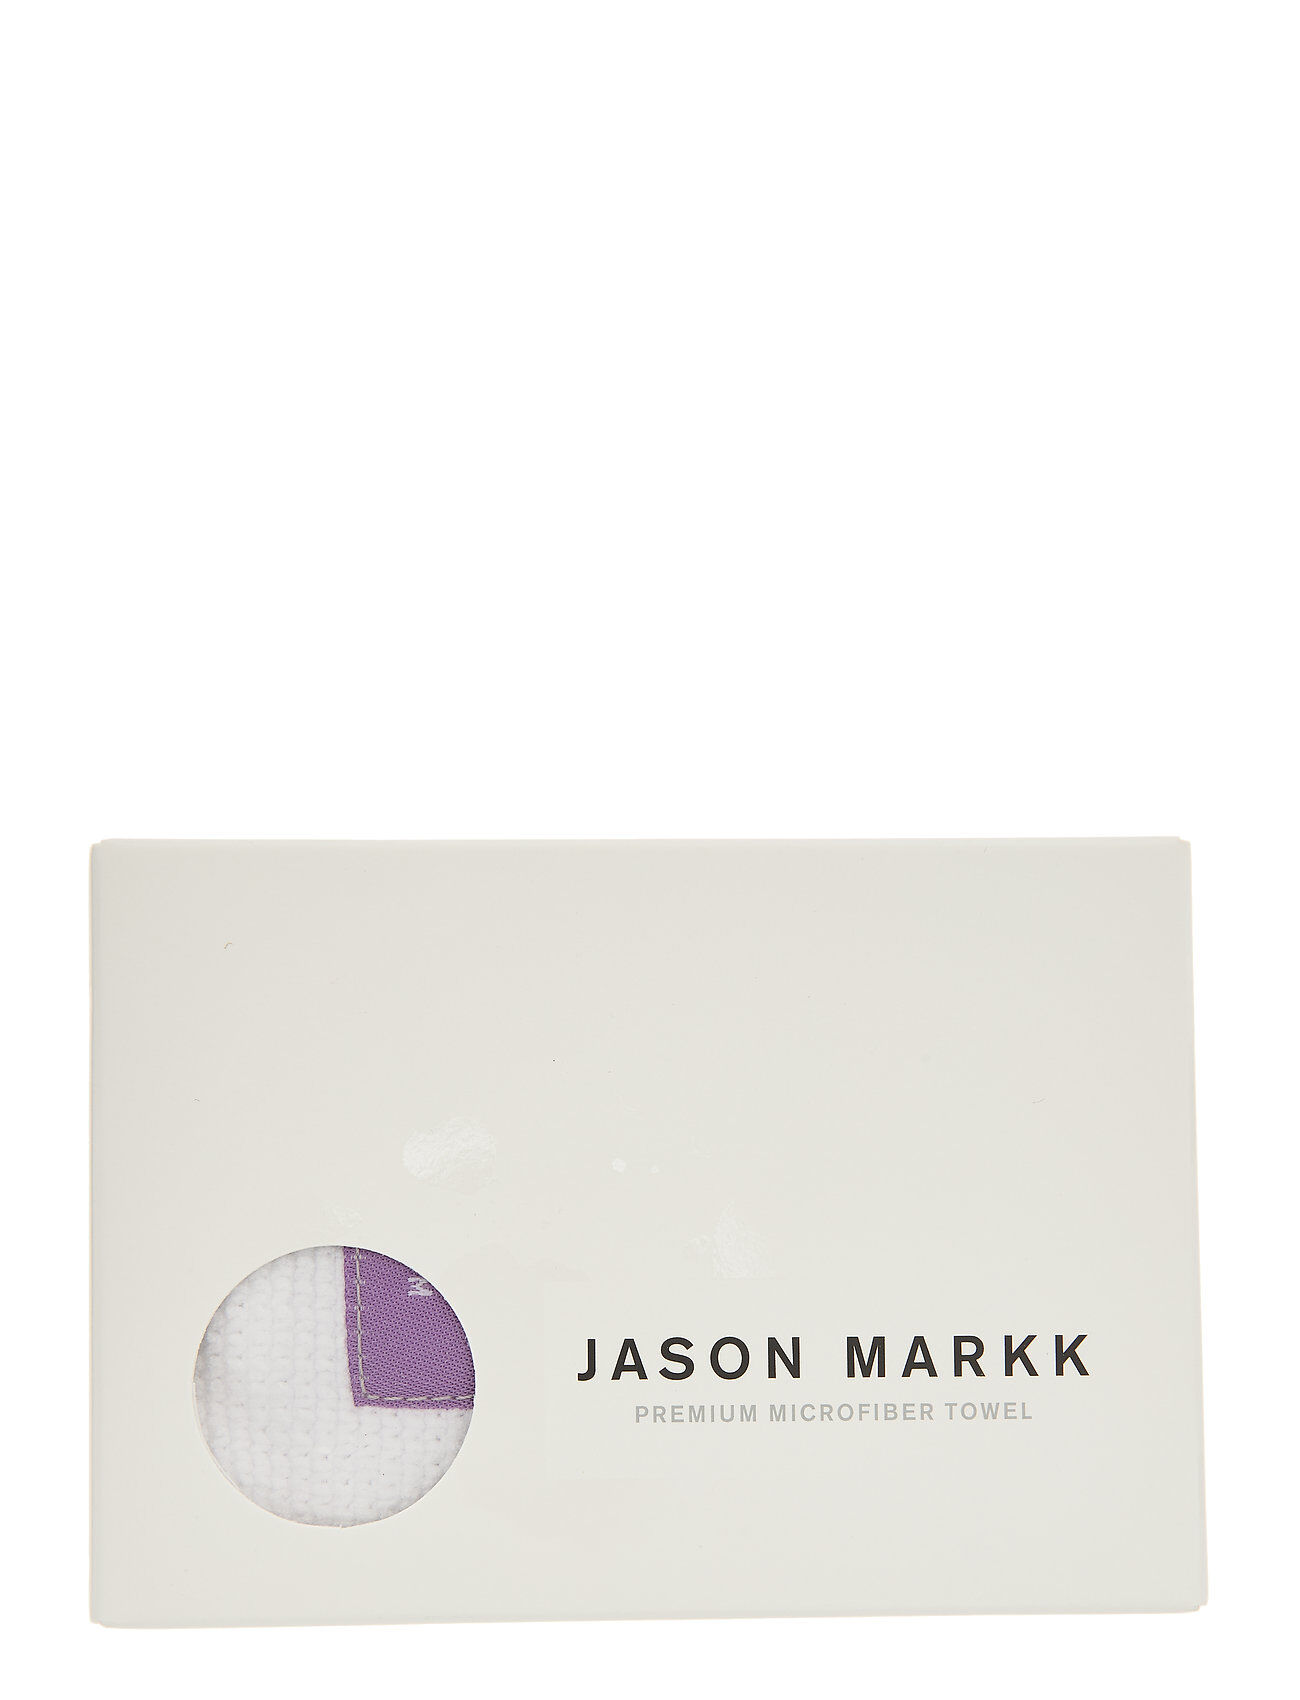 Jason Markk Premium Microfiber Towel Sko Tilbehør Multi/mønstret Jason Markk